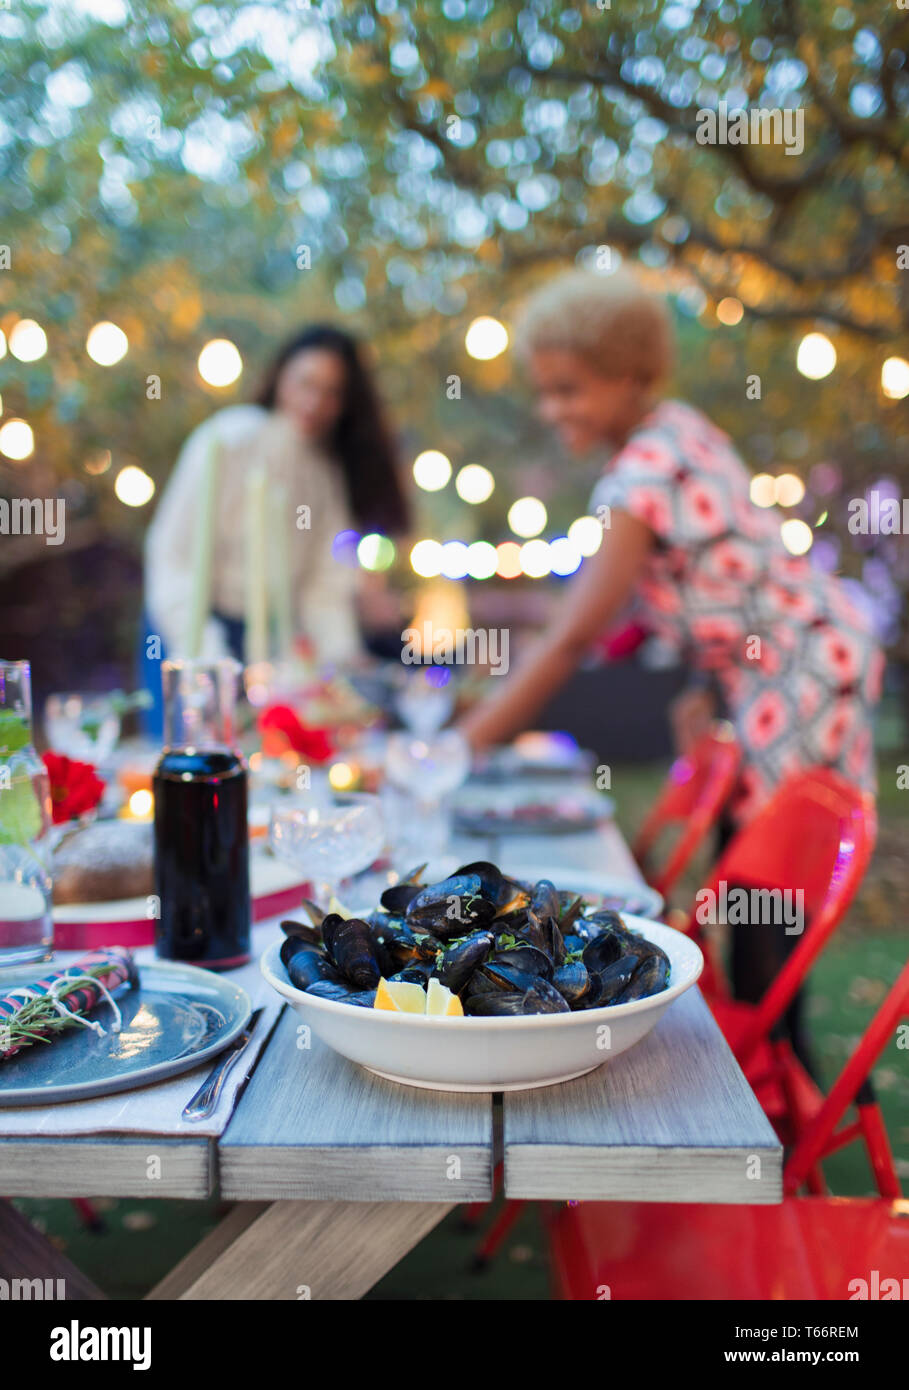 Mejillones en la cena garden party tabla Foto de stock